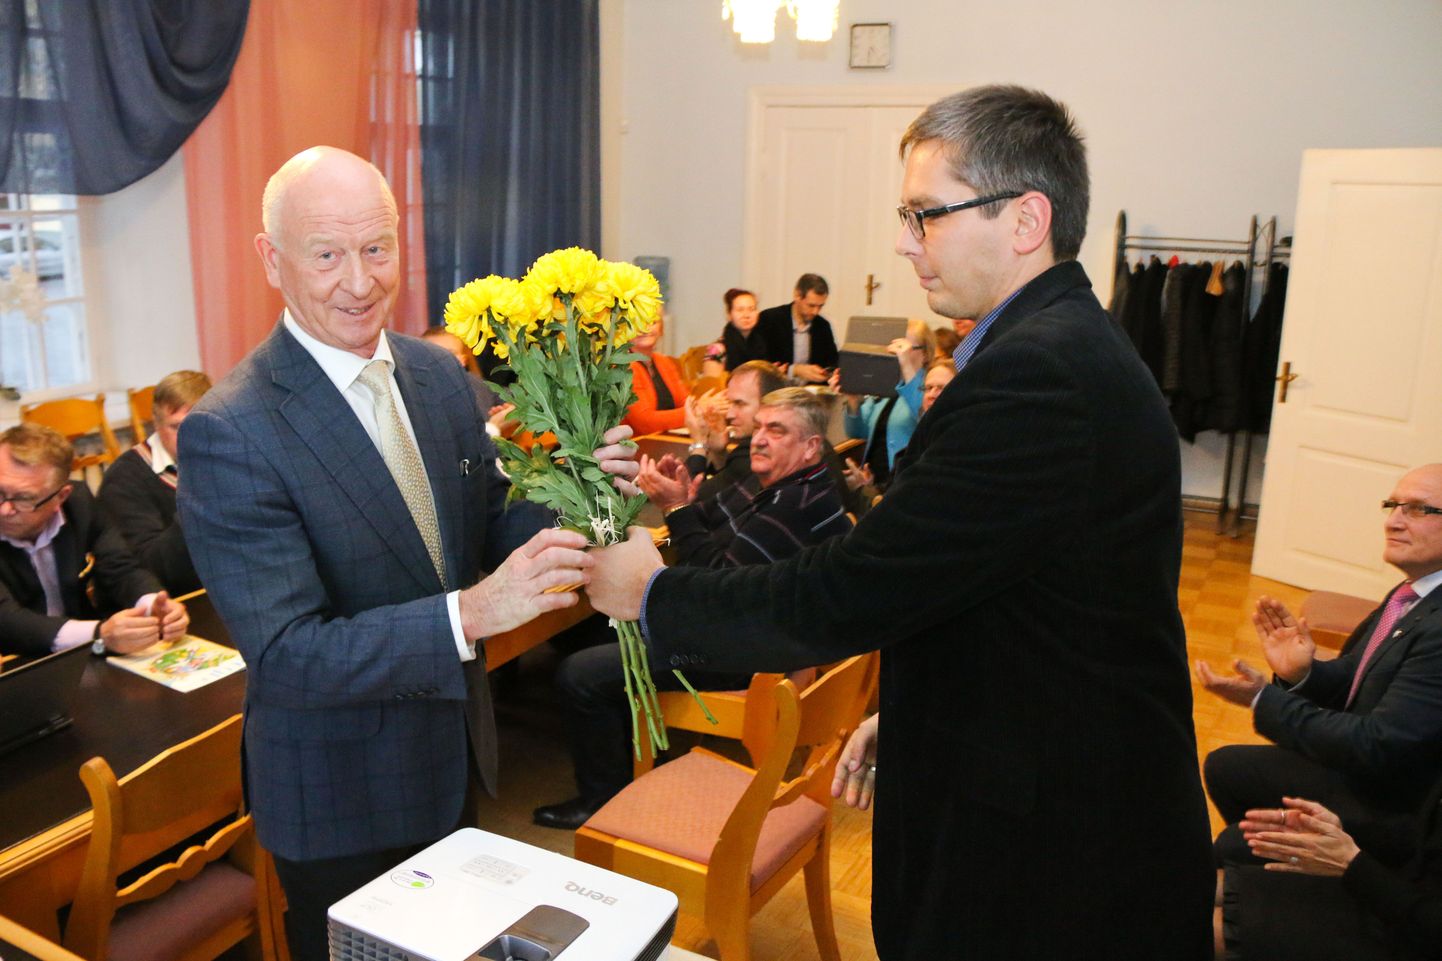 Rakvere linnavolikogu esimeheks sai Toomas Varek. Seni esimehetööd teinud Marko Torm suundus maavanemaks.